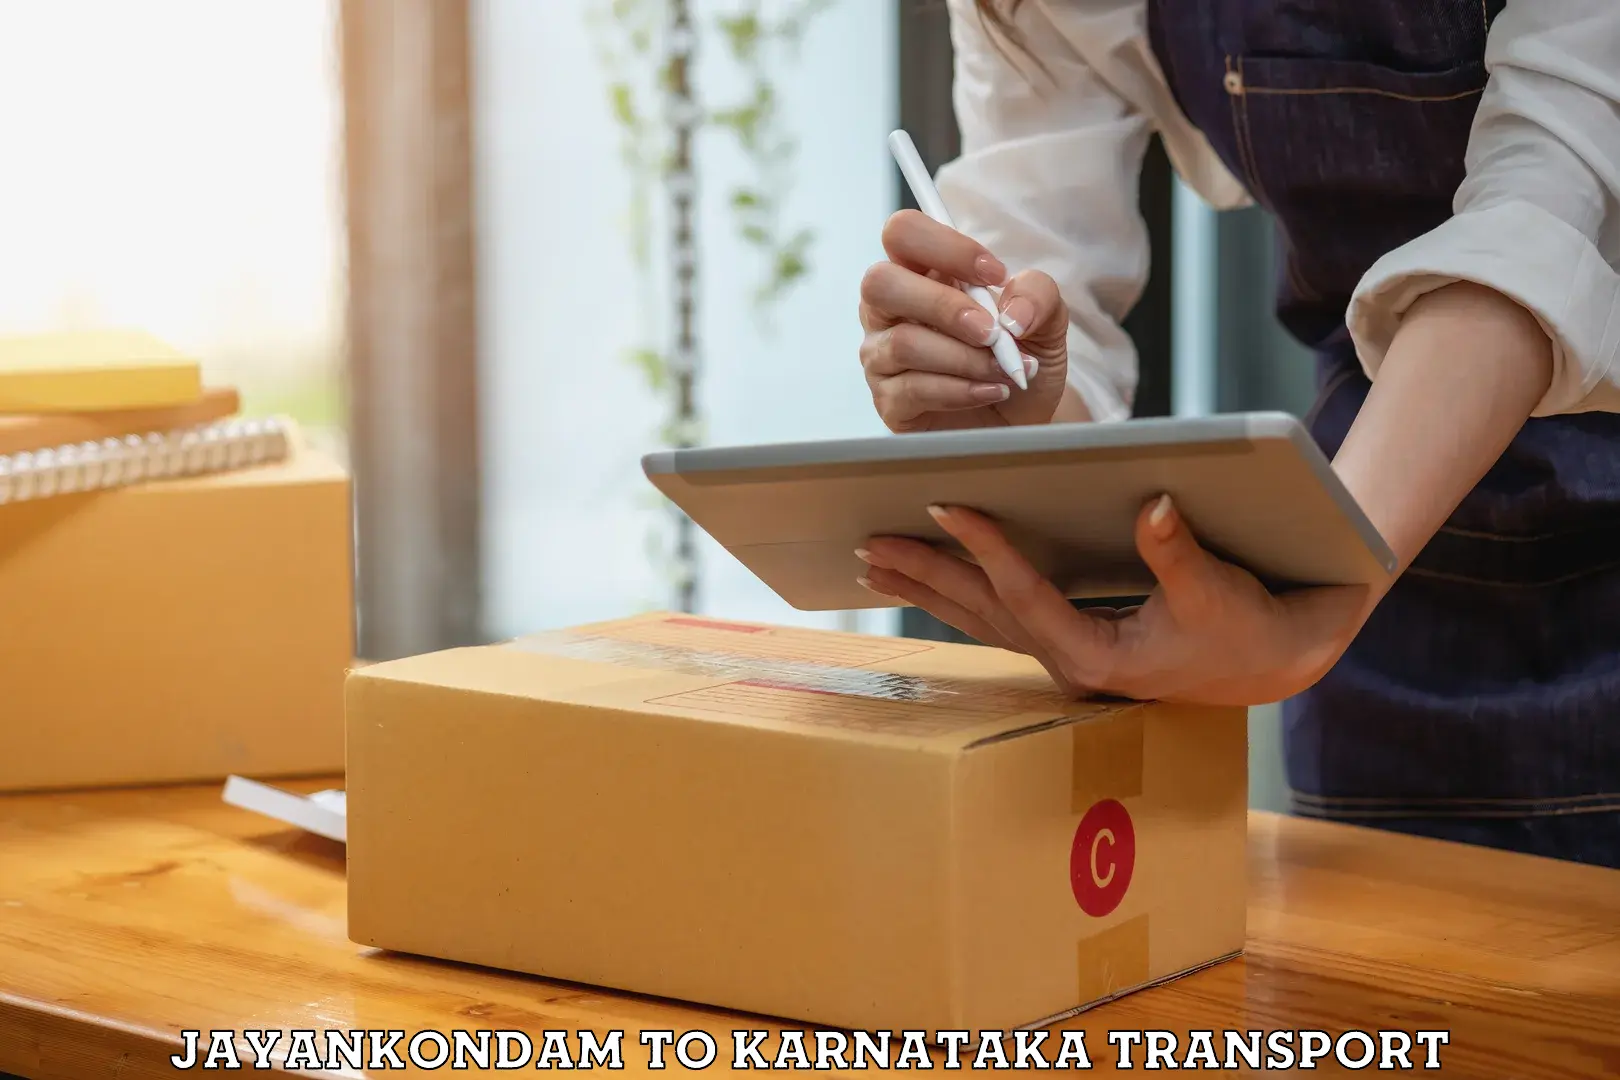 Pick up transport service Jayankondam to Karnataka